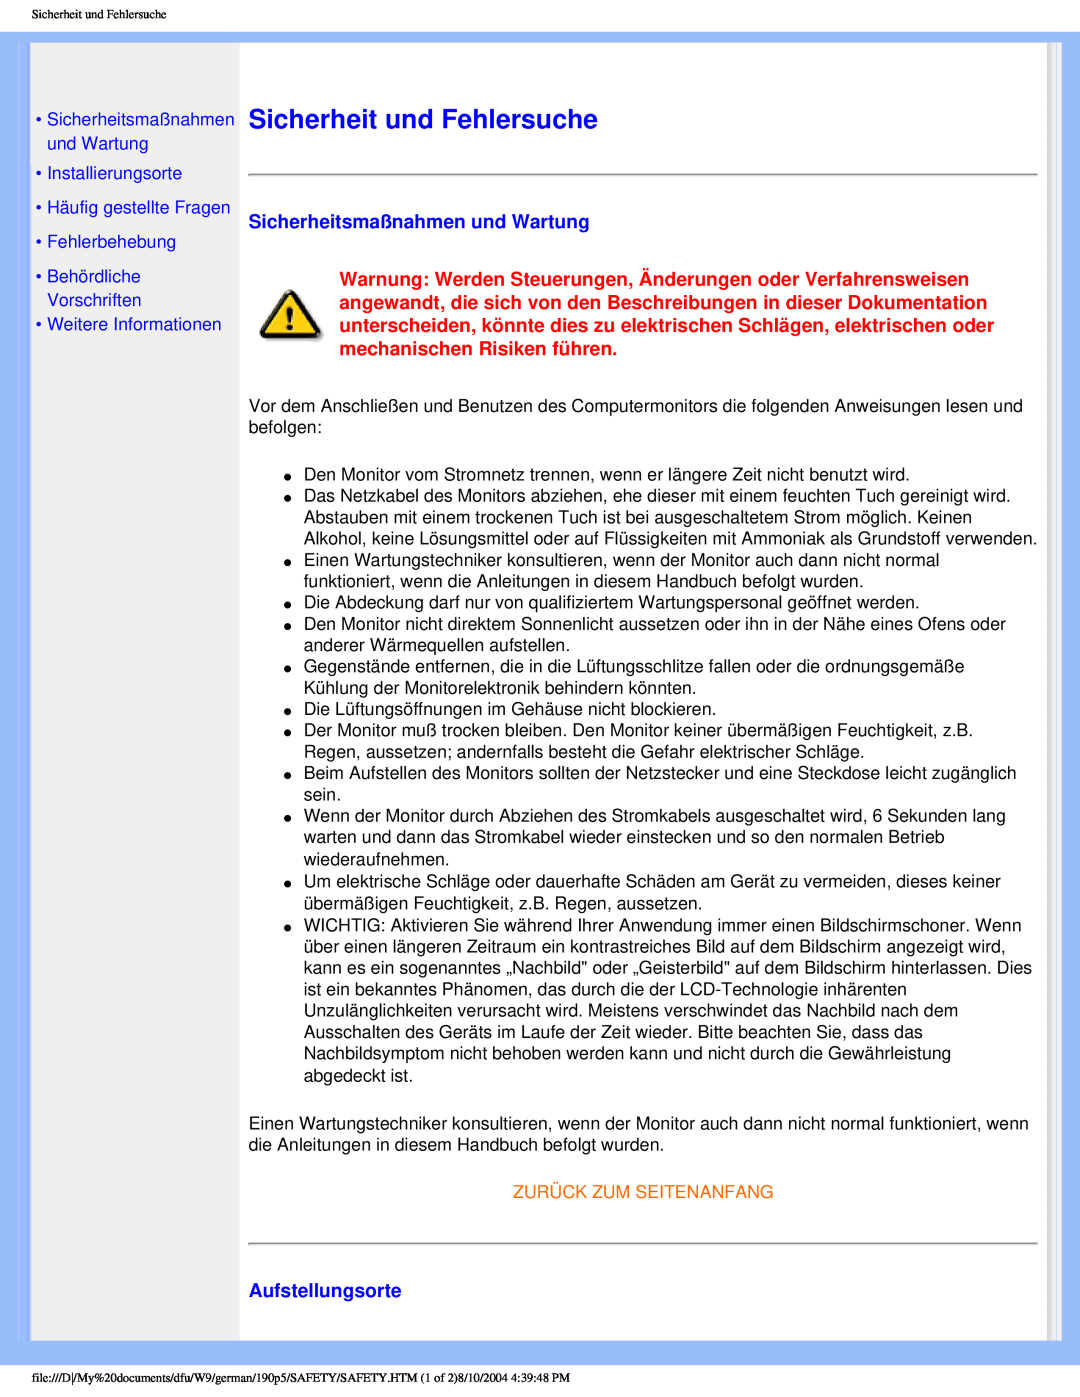 Philips 190P5 Sicherheit und Fehlersuche, Sicherheitsmaßnahmen und Wartung, Aufstellungsorte, Weitere Informationen 